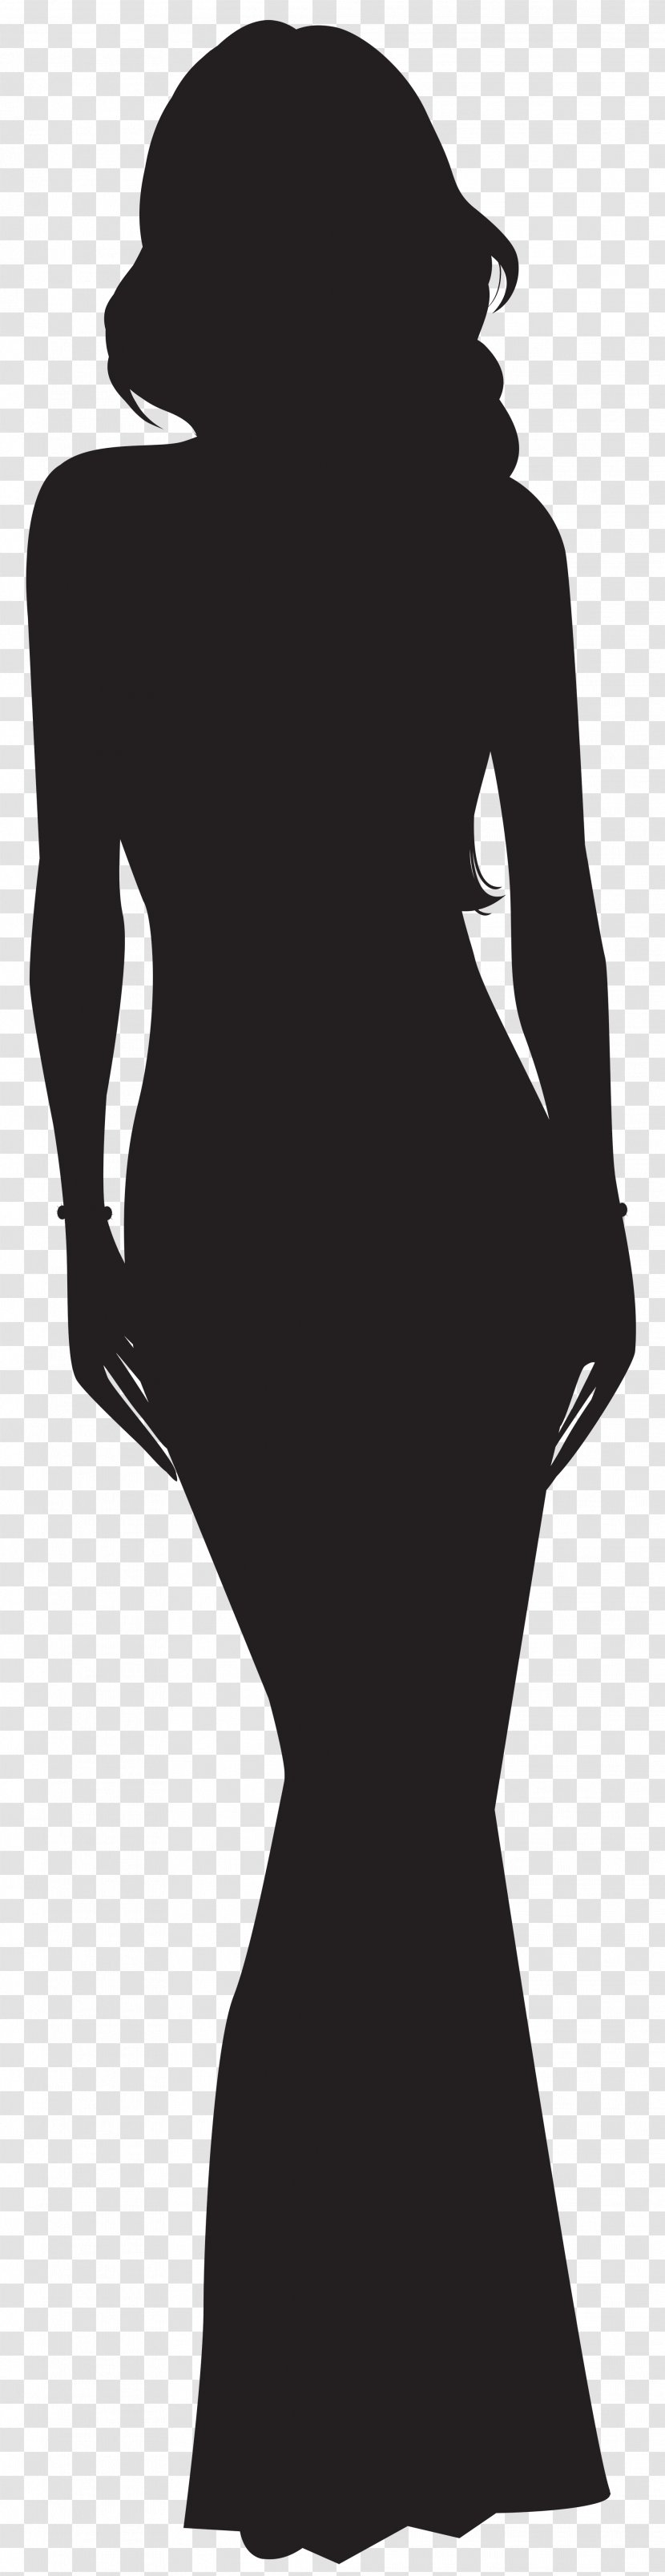 Woman Silhouette Clip Art - Shoulder - Black Transparent PNG